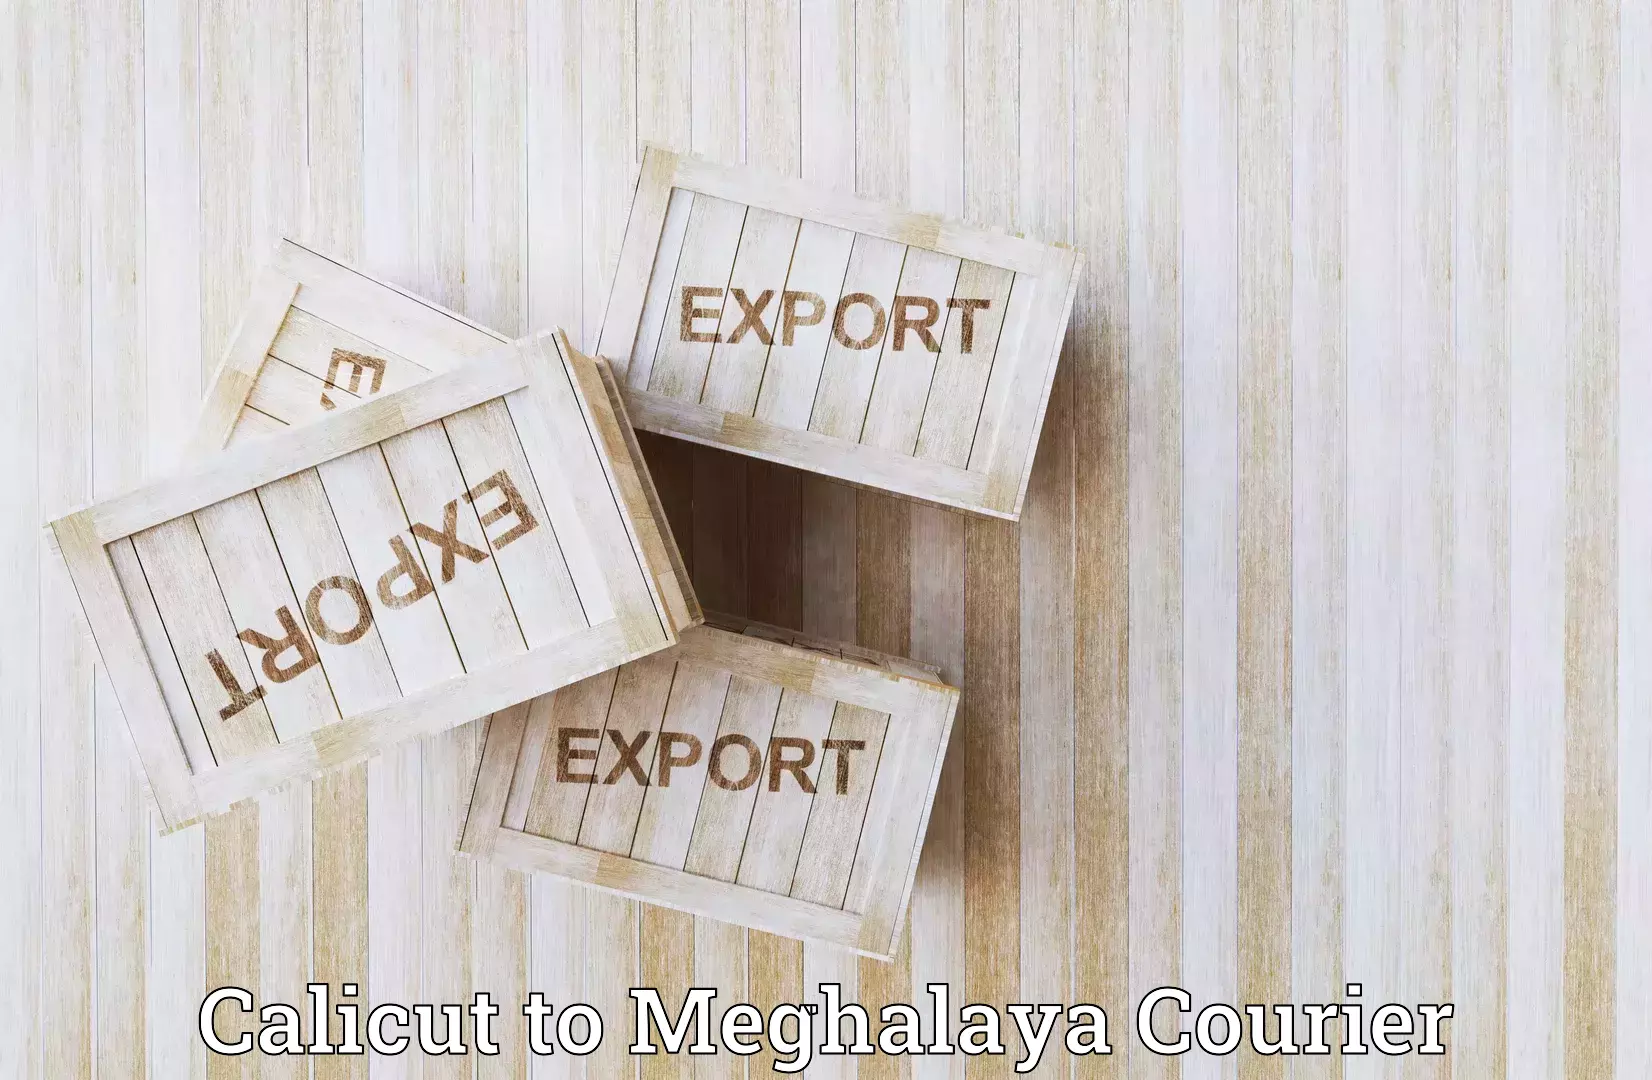 Flexible shipping options Calicut to Meghalaya